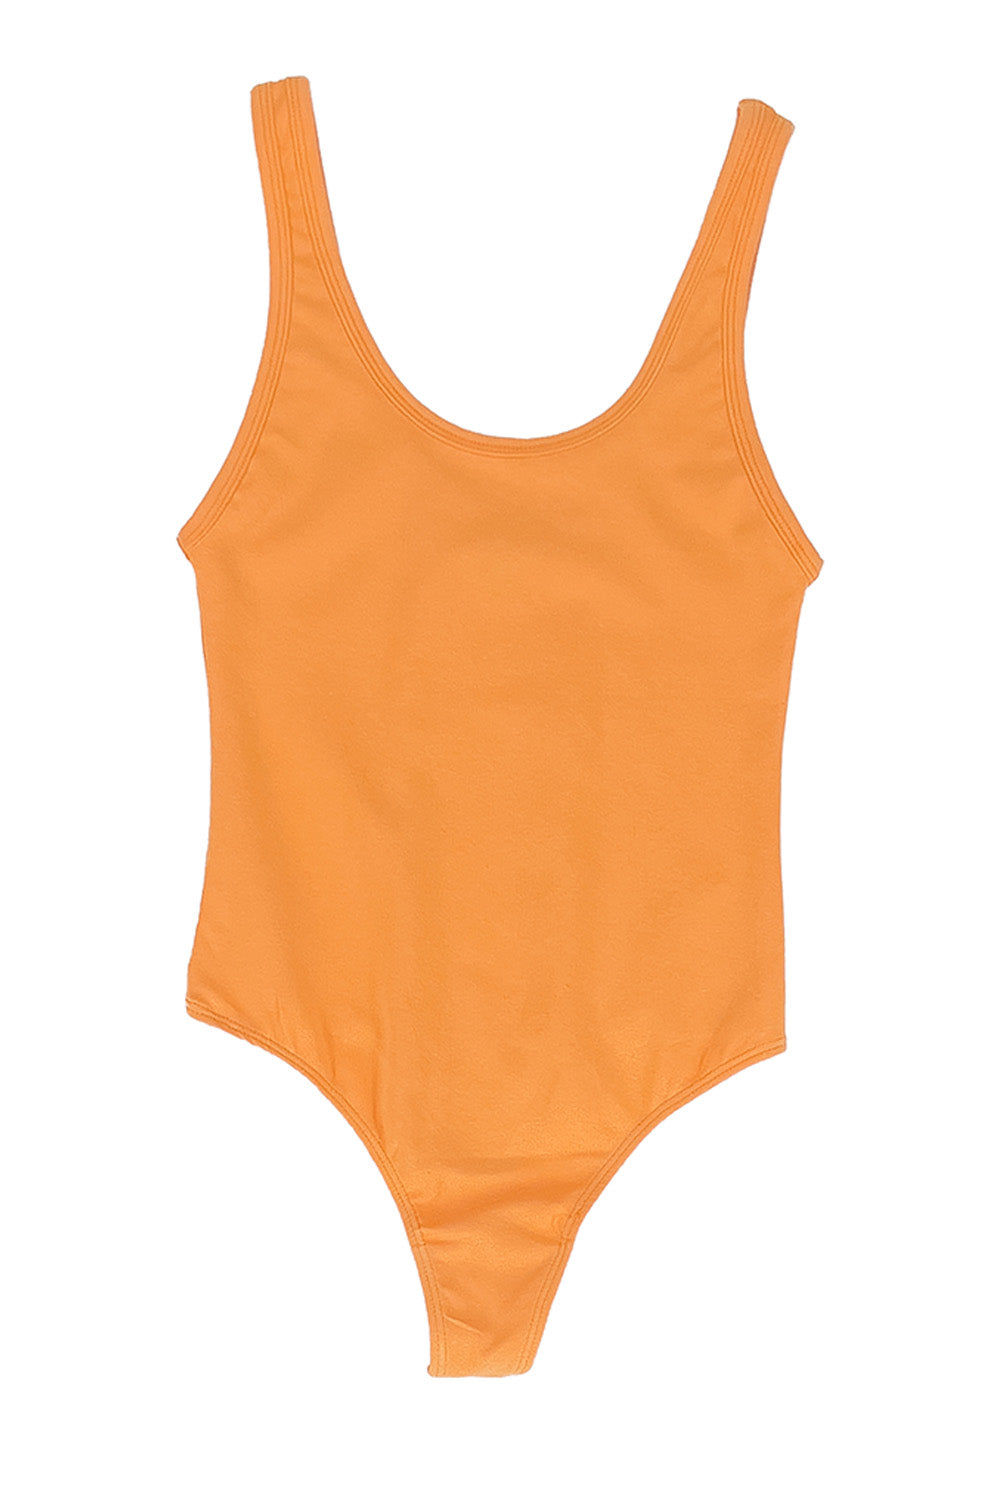 Bodysuit | Jungmaven Hemp Clothing & Accessories / Color:Apricot Crush